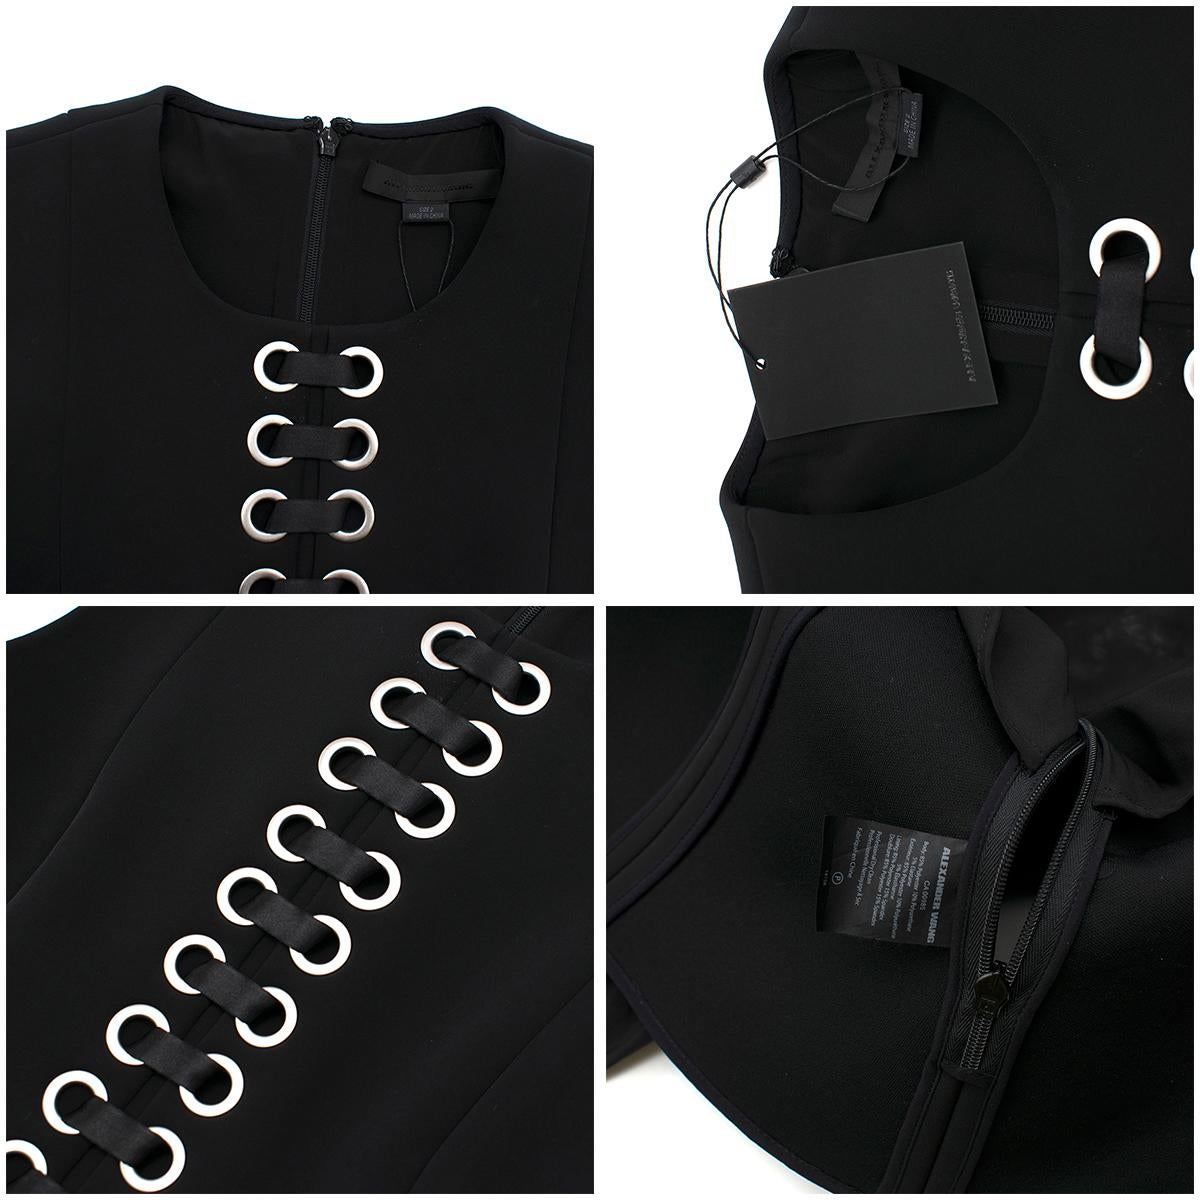 Alexander Wang Black Lace-Up Peplum Top & Pleated Skirt  Top- 2, Skirt- 4 (XS) 1